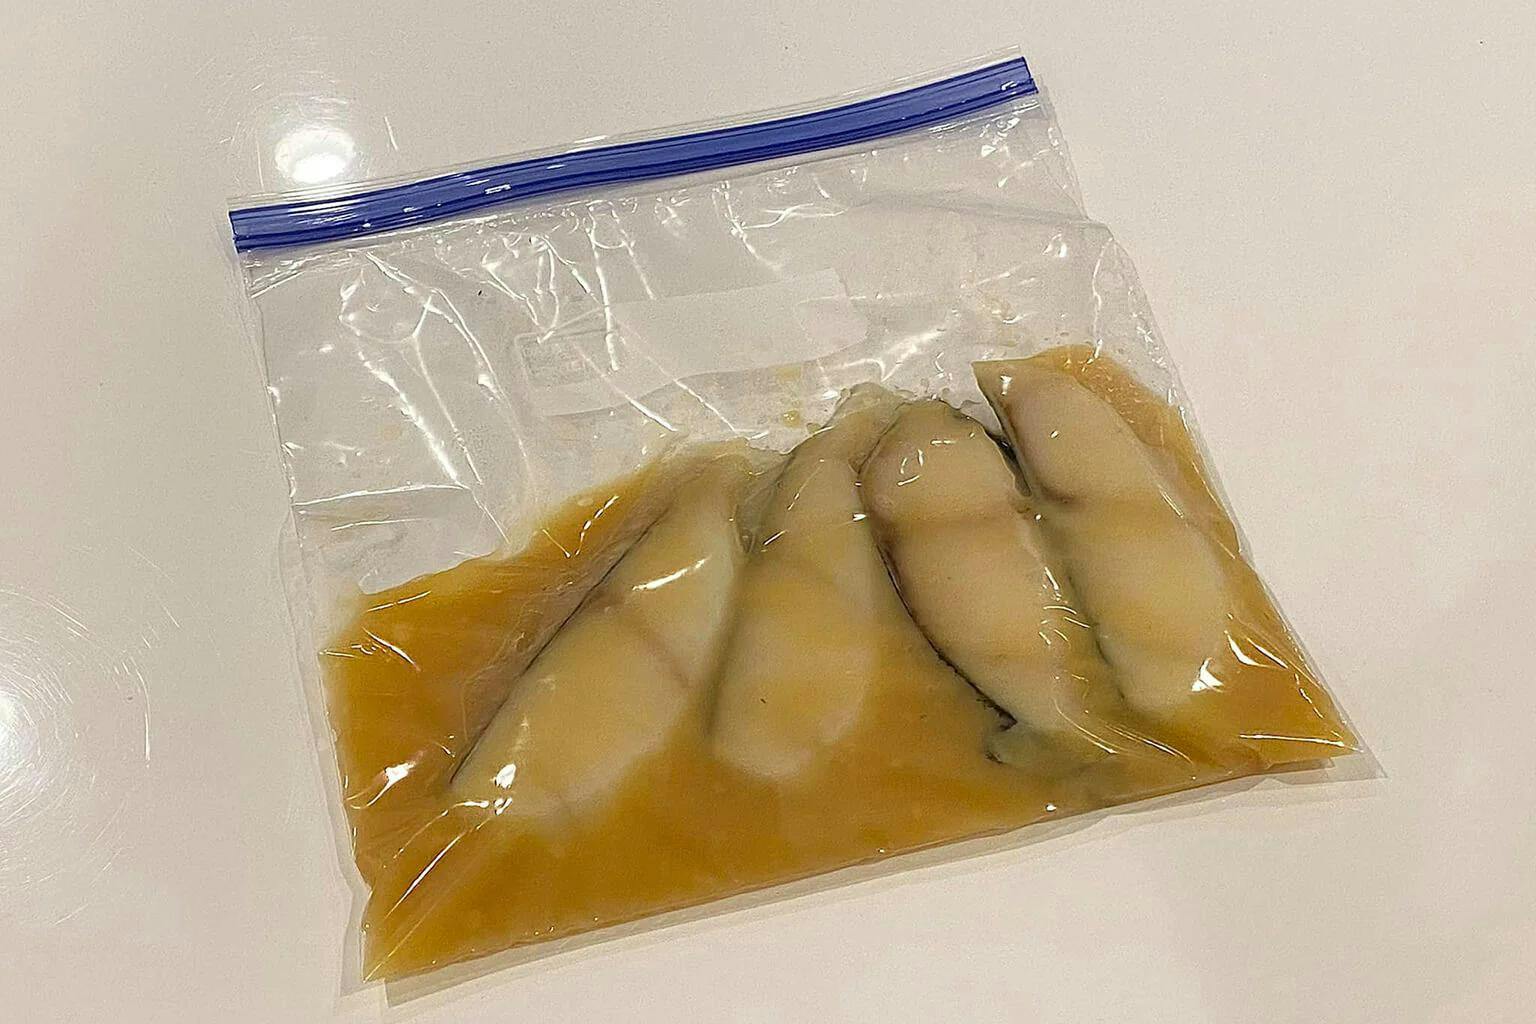 Miso cod in freezer bag